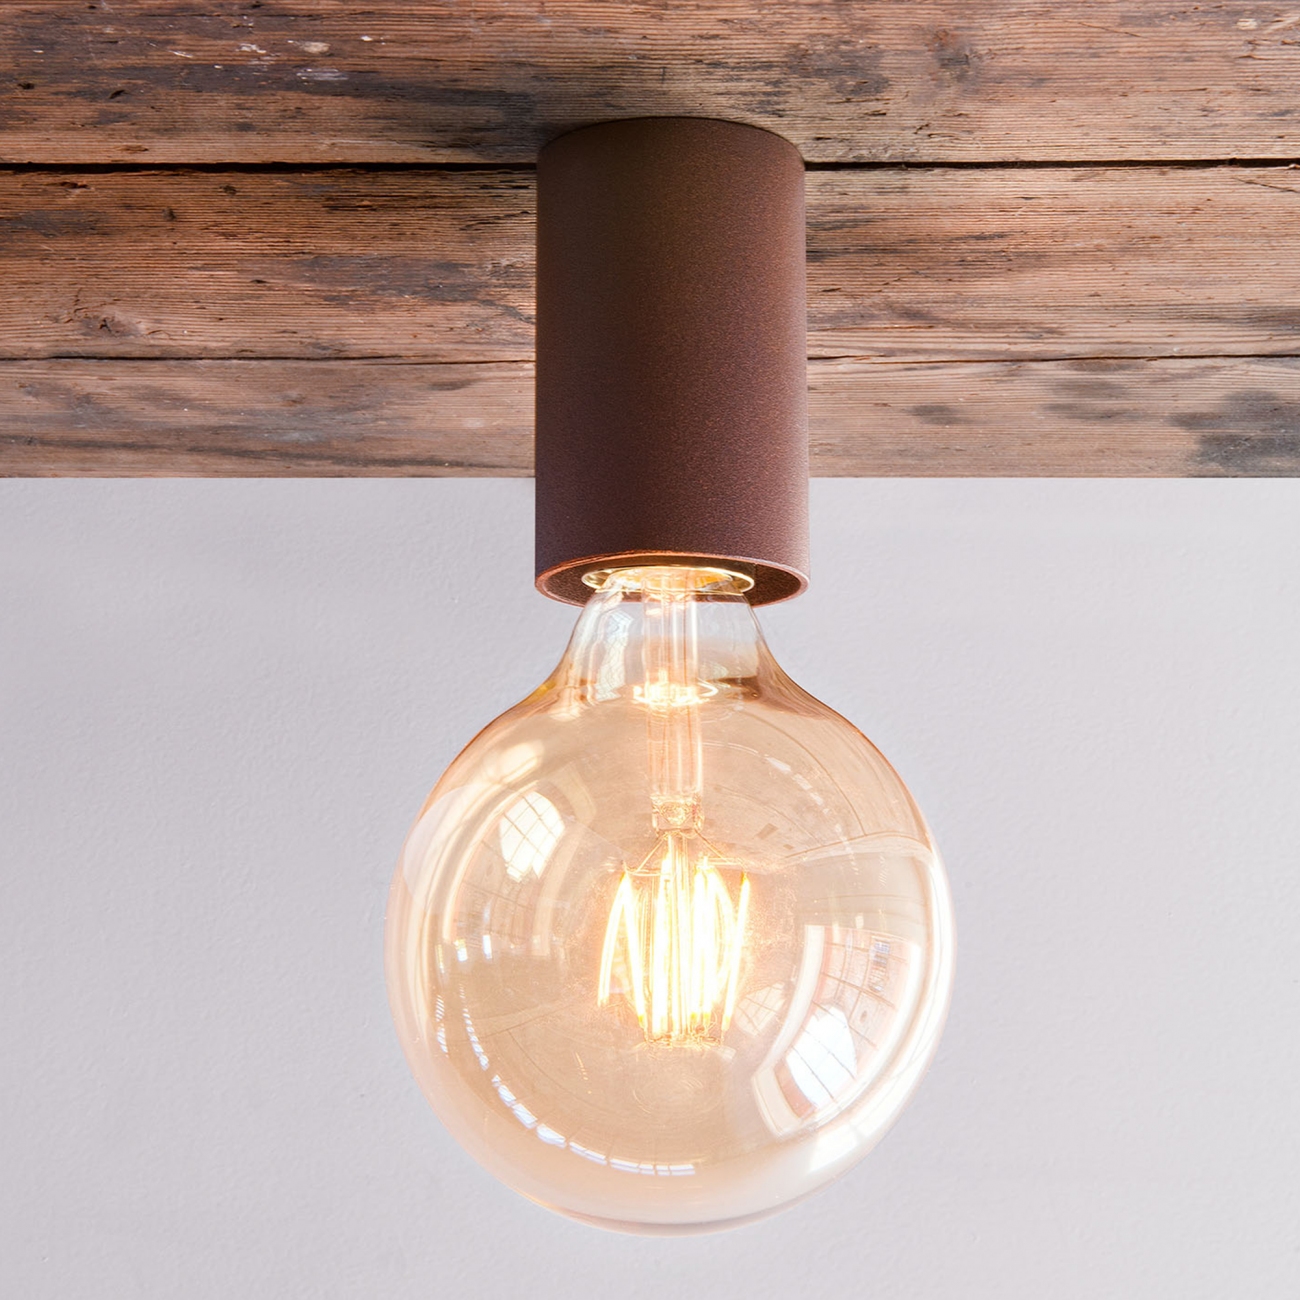 Olev Simple Ceiling Lamp